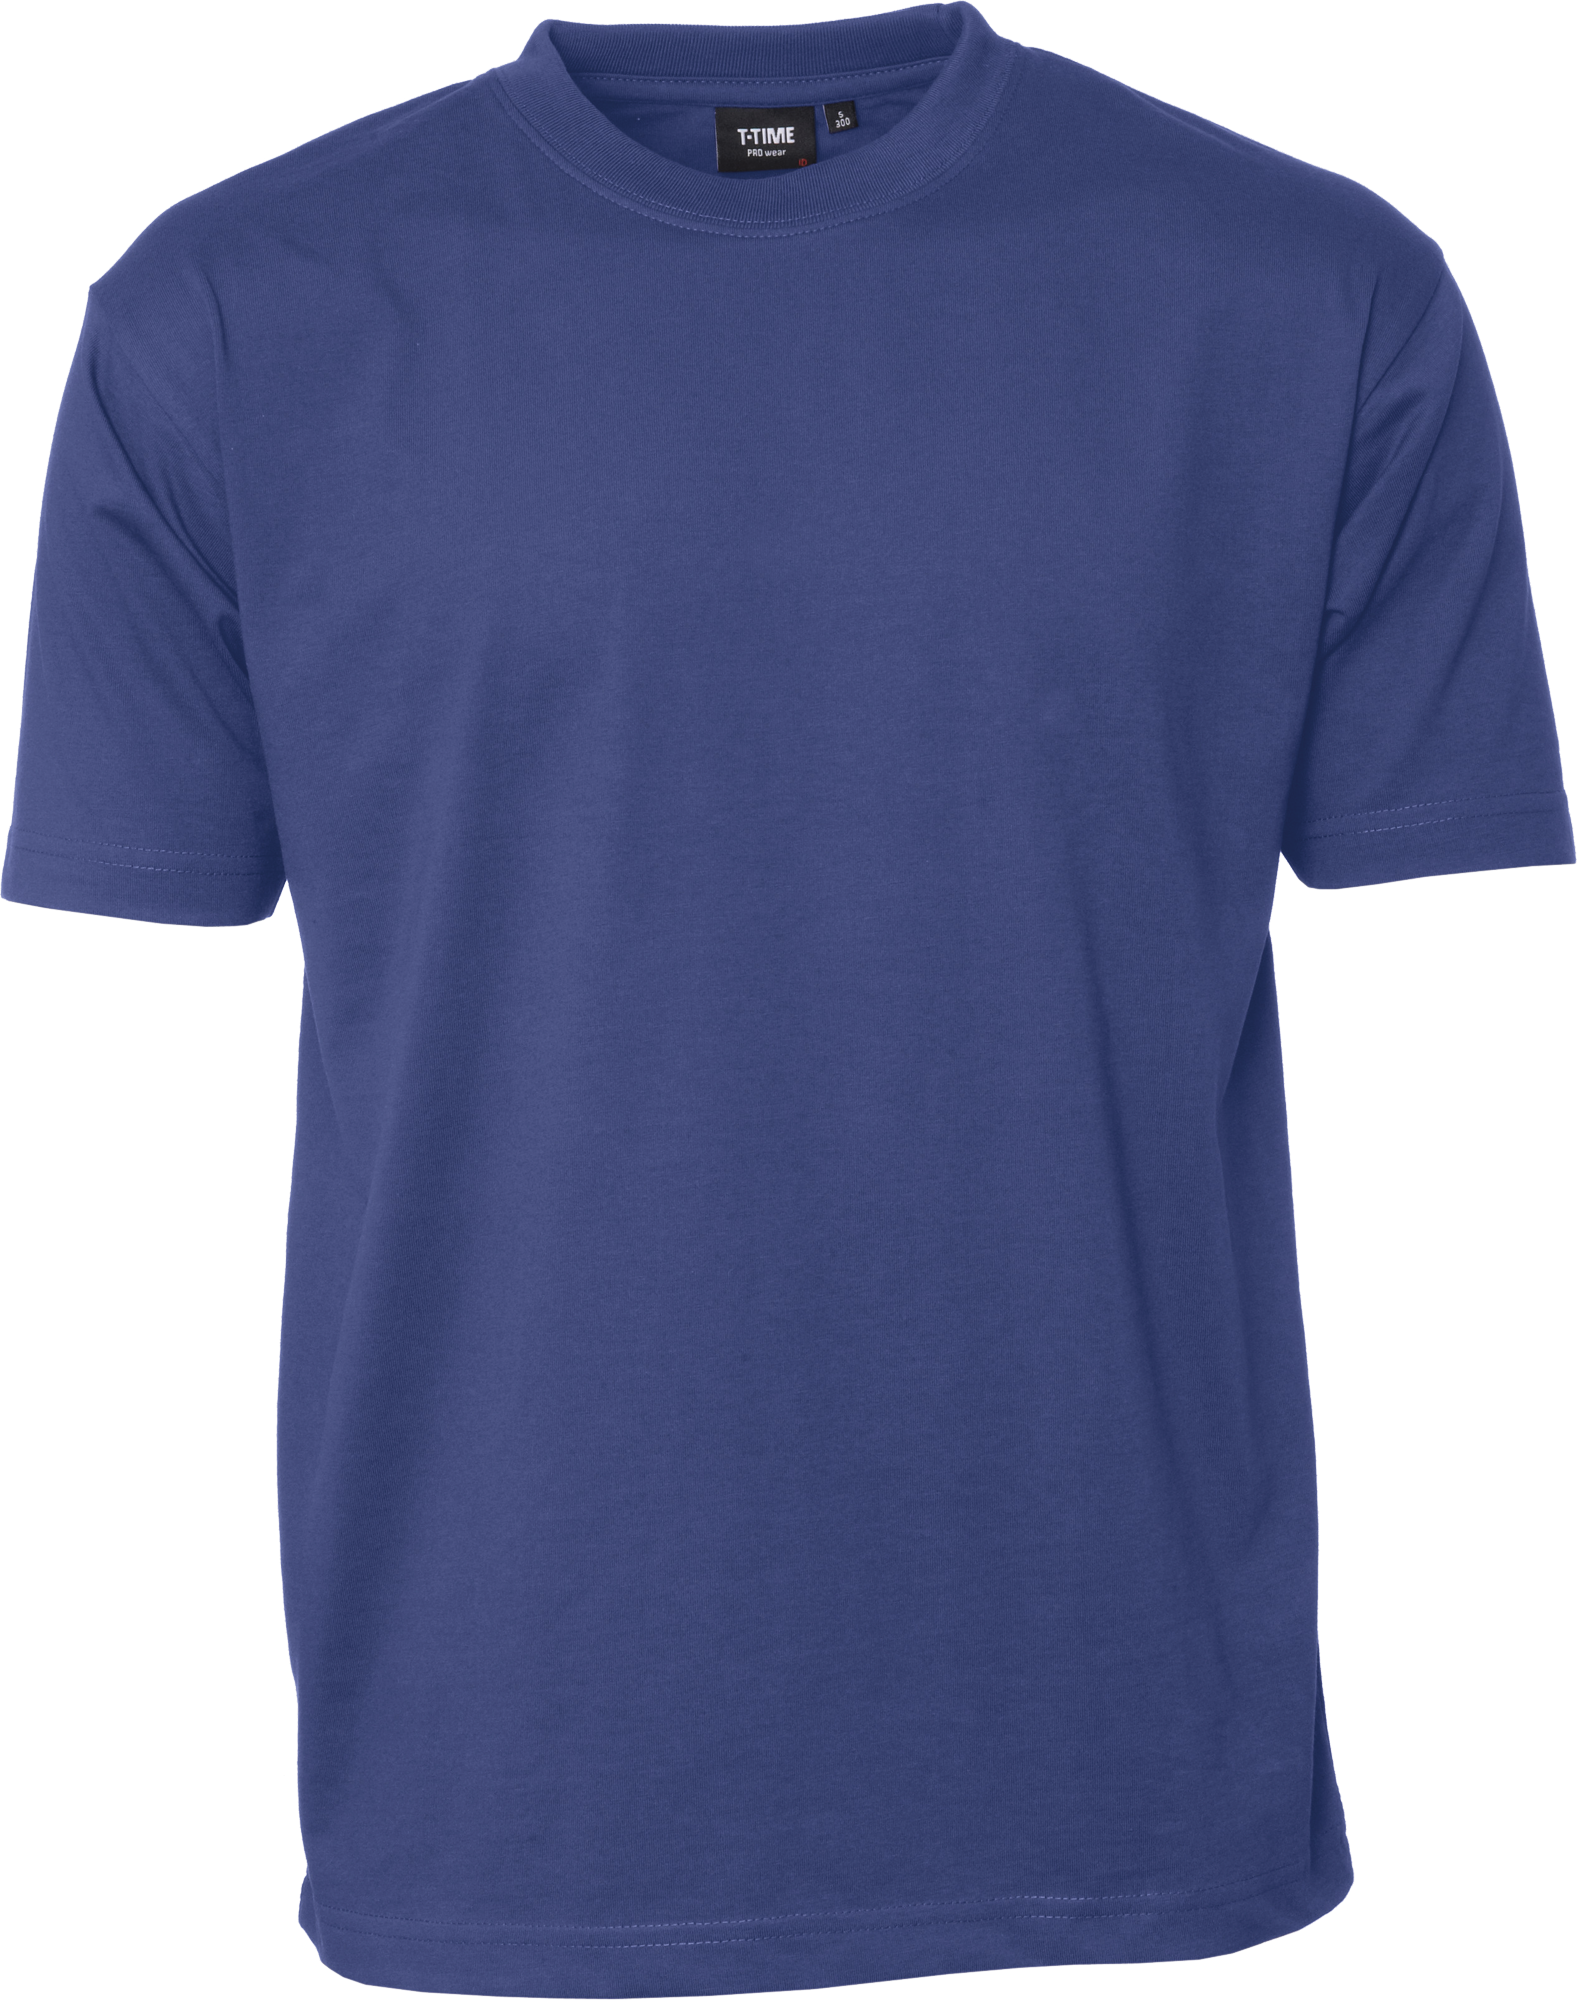 Azur T-Shirt - herre, Prowear (8150211)